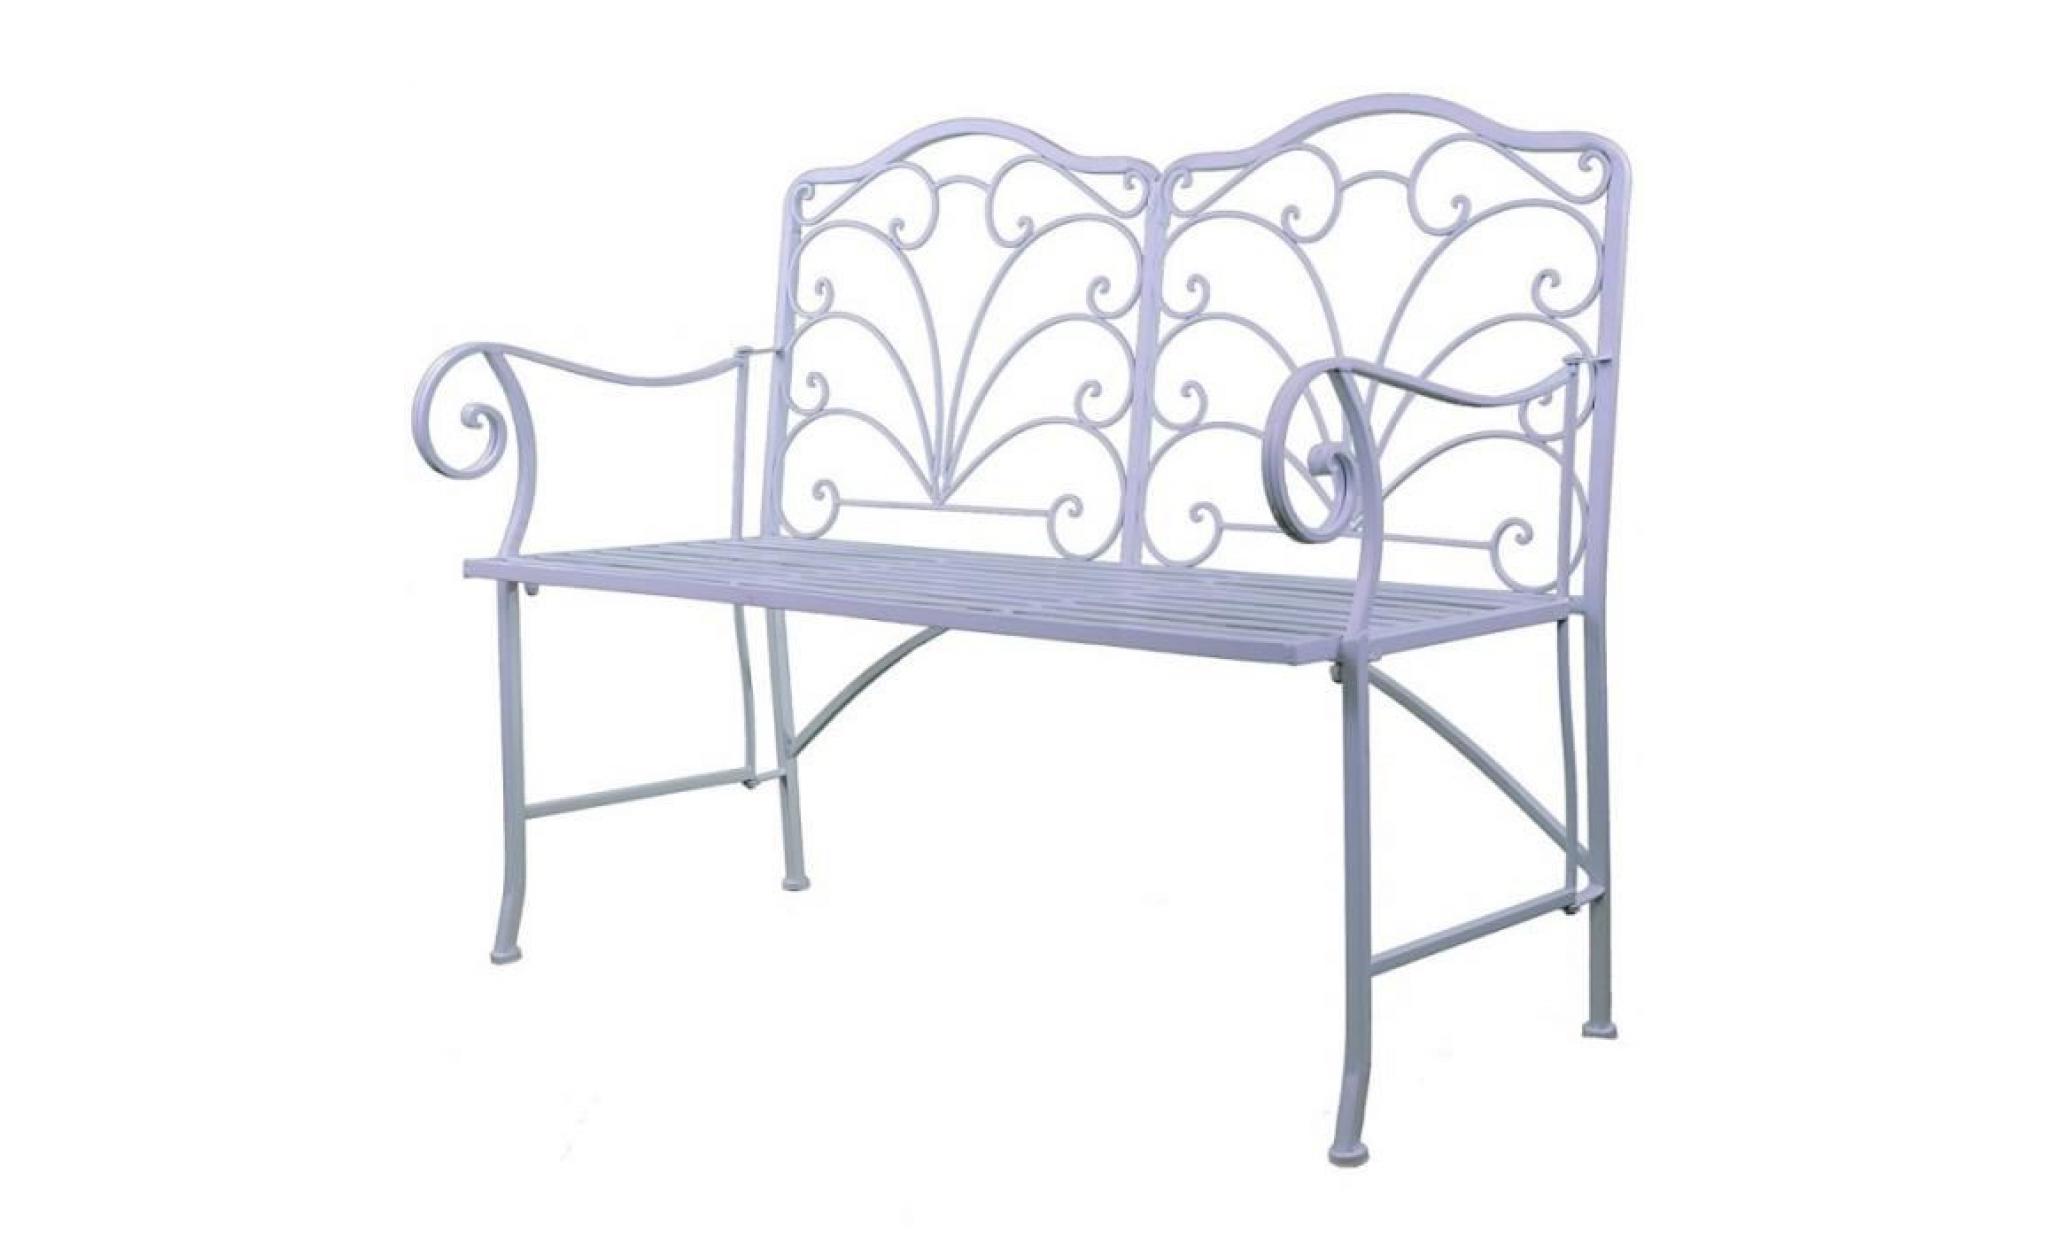 chaise double banc pliable banquette de jardin en fer blanc assise 2 places 52x92x111cm